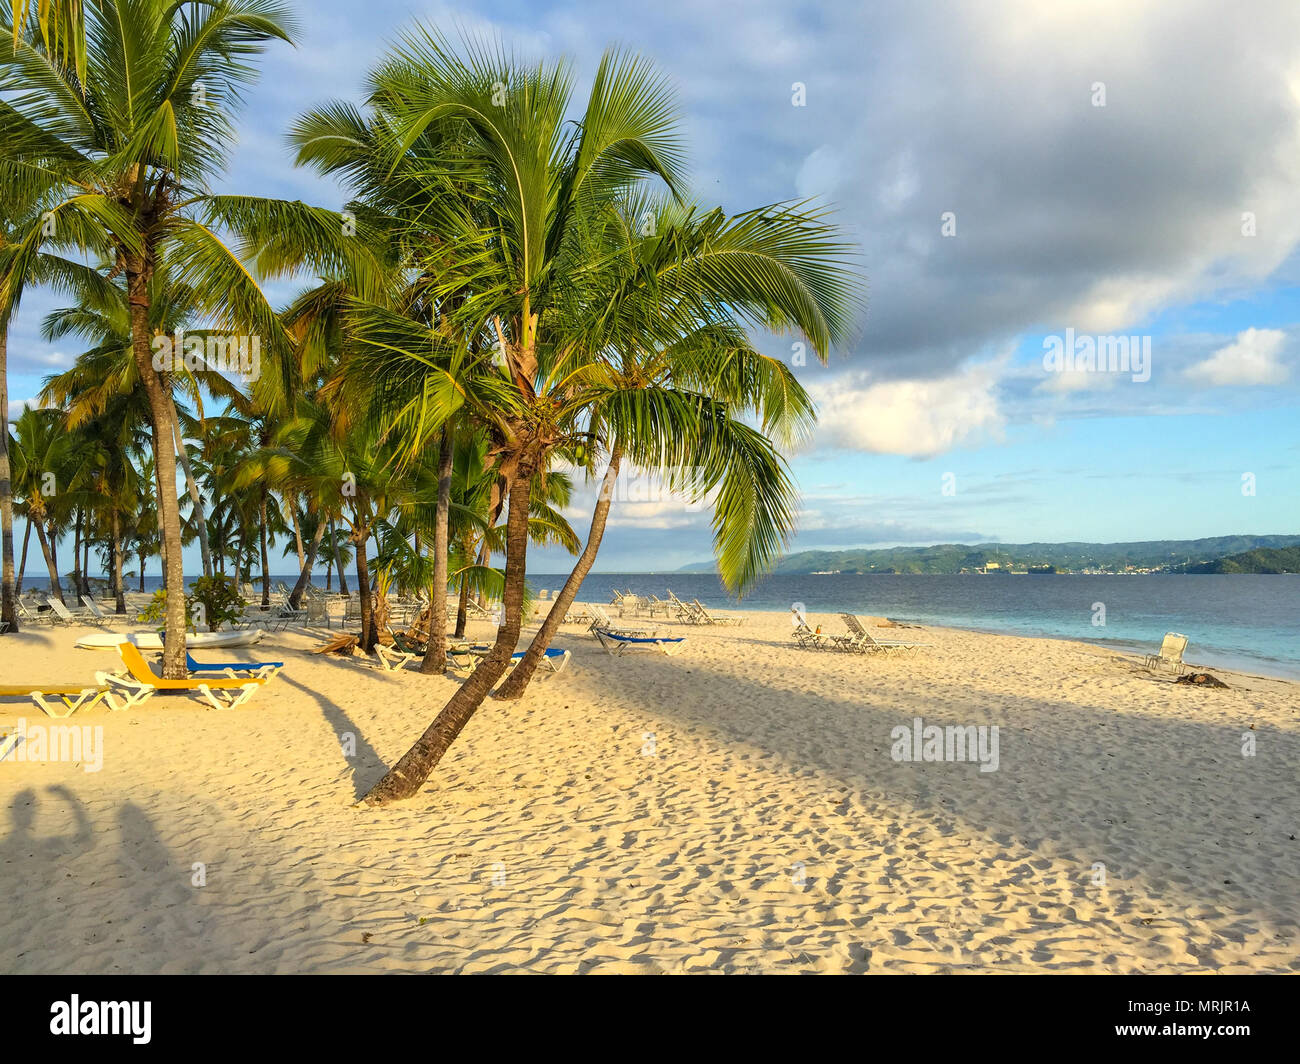 Plage de la mer des Caraïbes, belle plage de sable, de palmiers et de chaises longues, l'ombre du soleil Banque D'Images